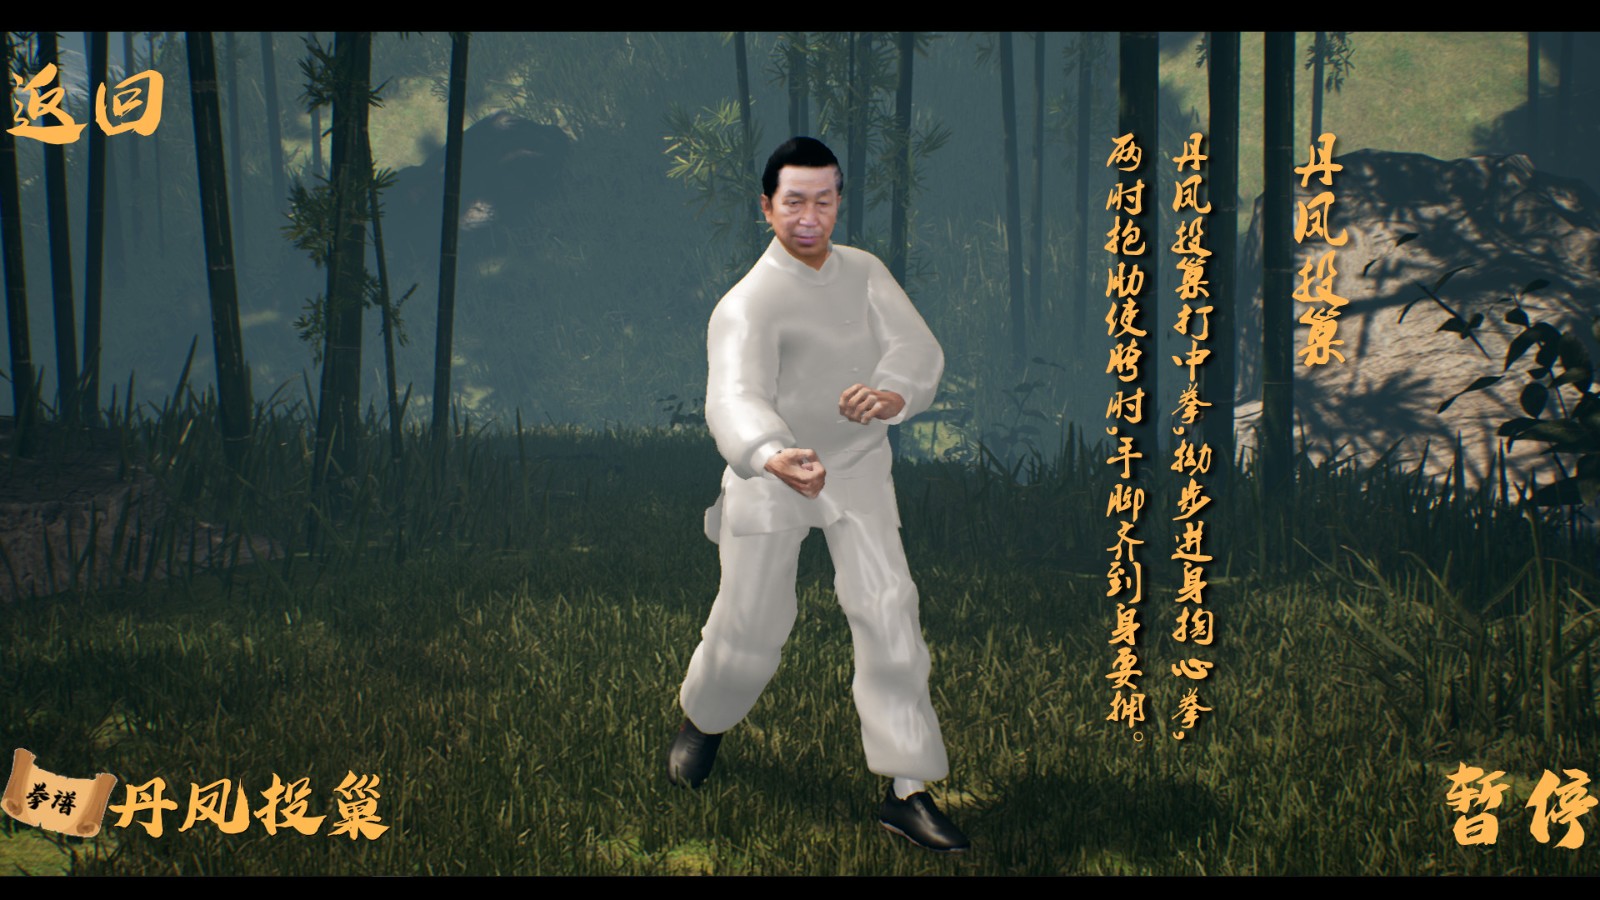 国产武术教学软件《中国传统武术 八卦掌 六十四手》上架Steam